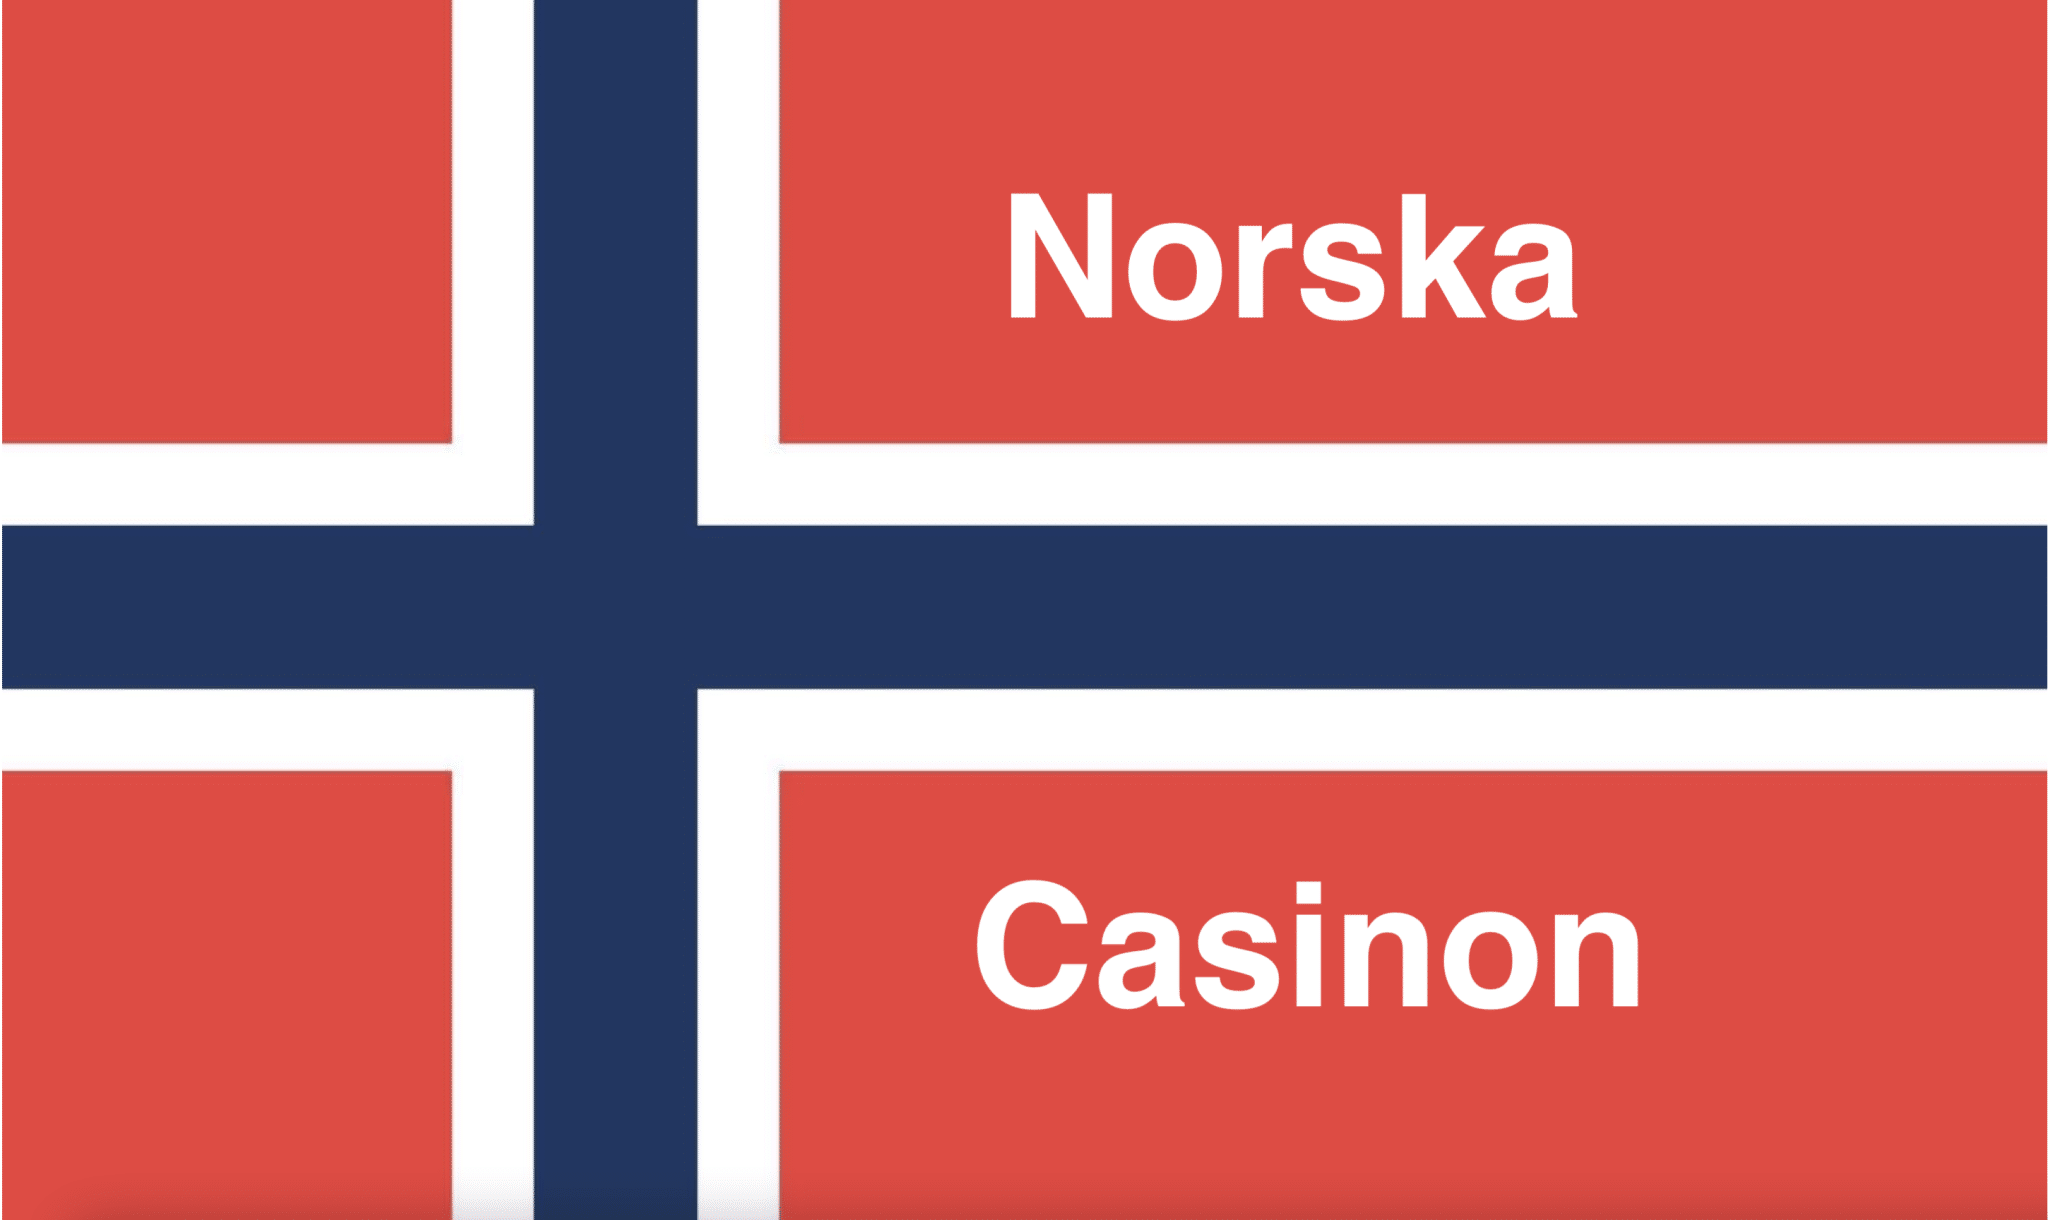 Norska flaggan med ''Norska Casinon'' text